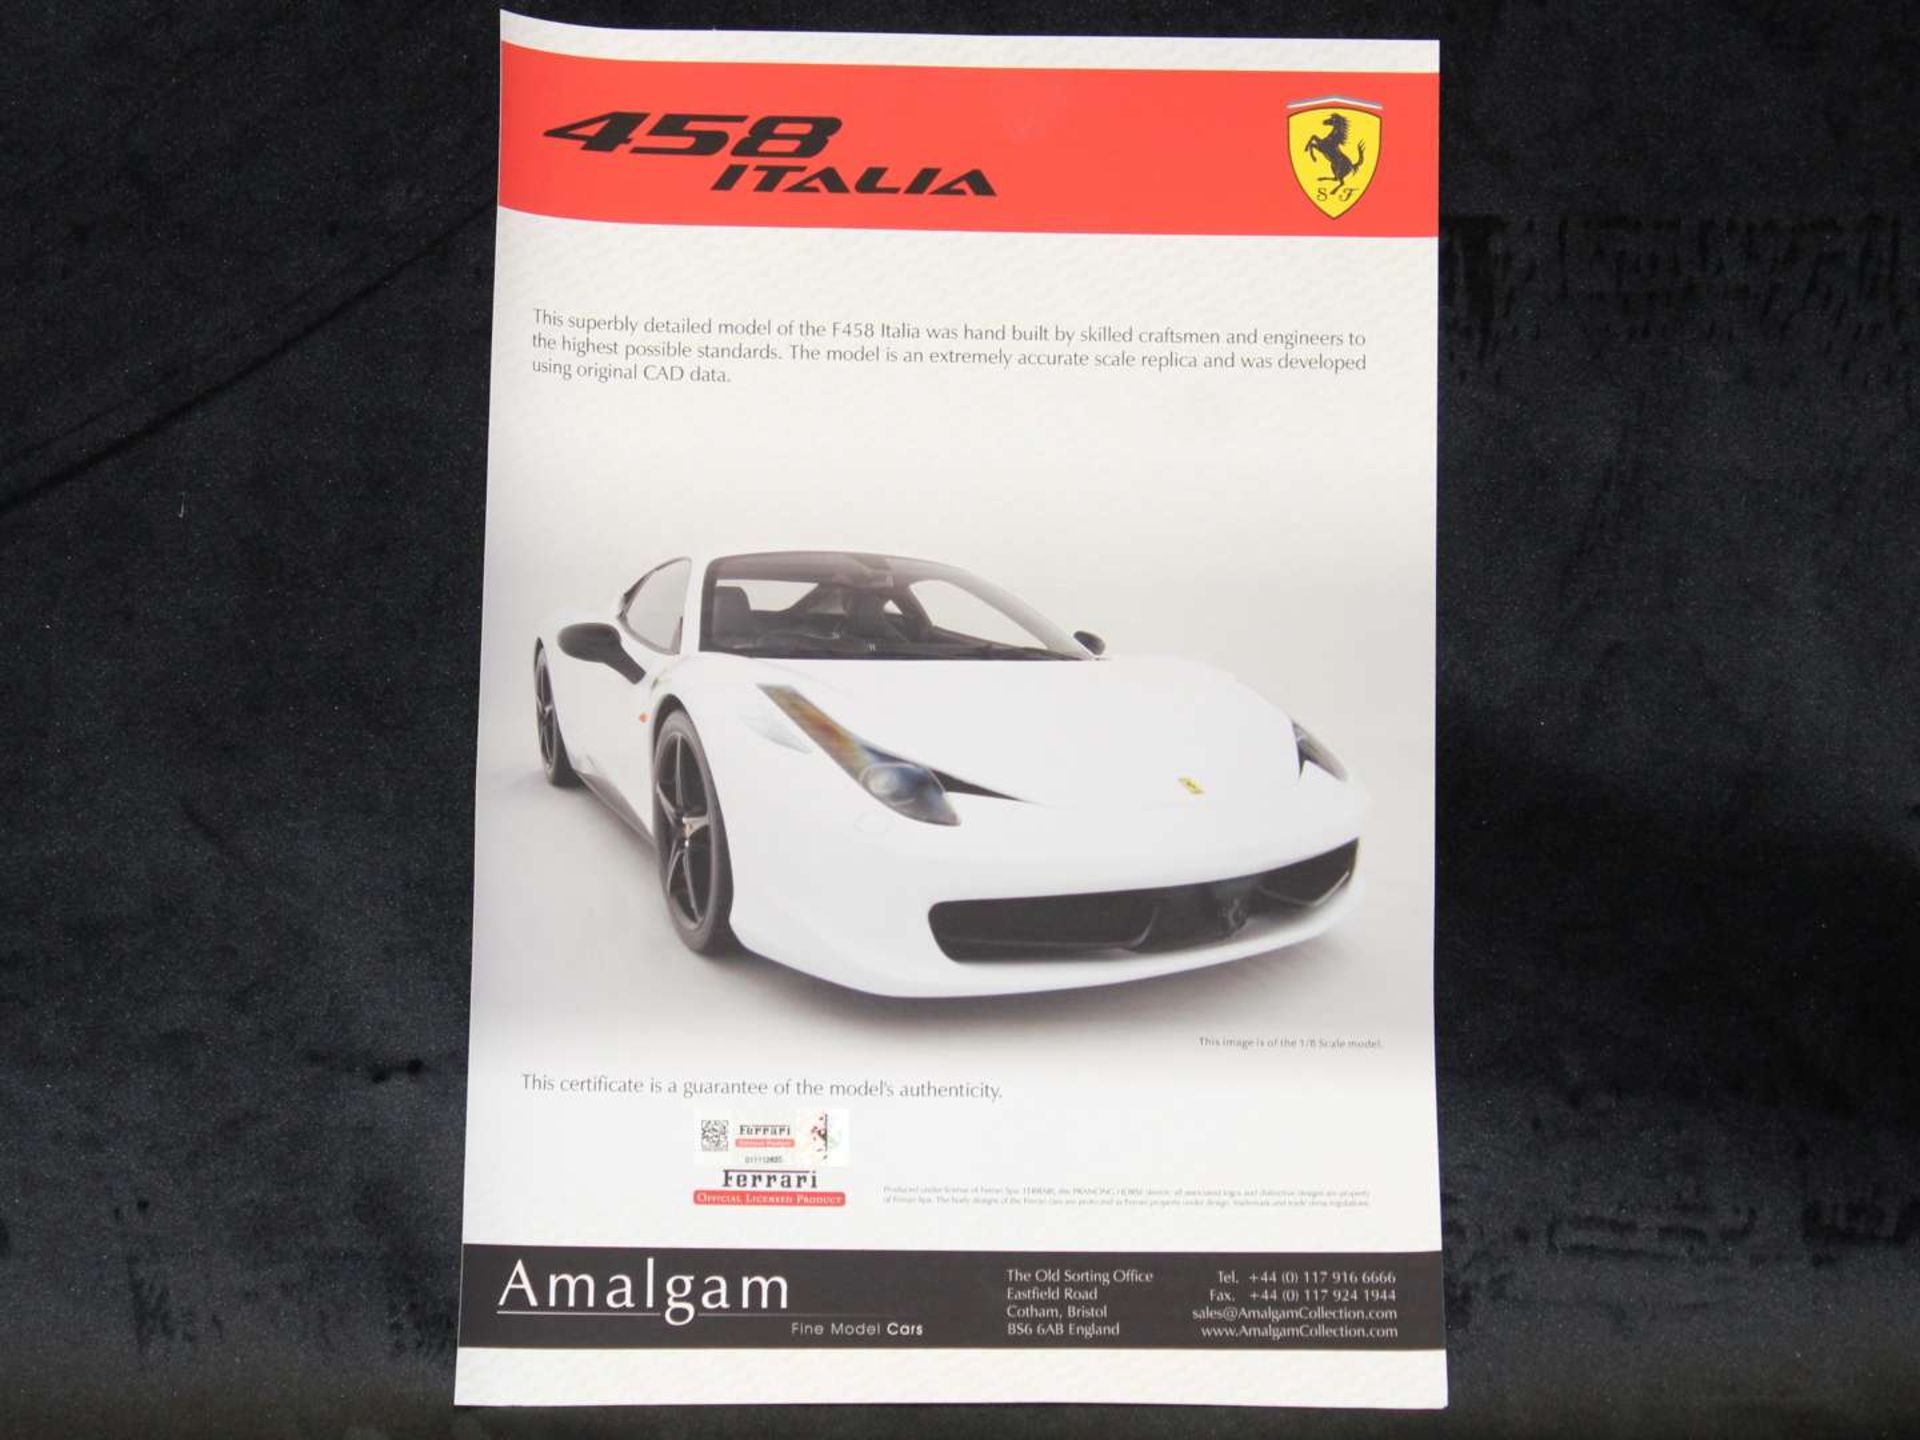 Amalgam Ferrari 458 Italia model - Image 8 of 9